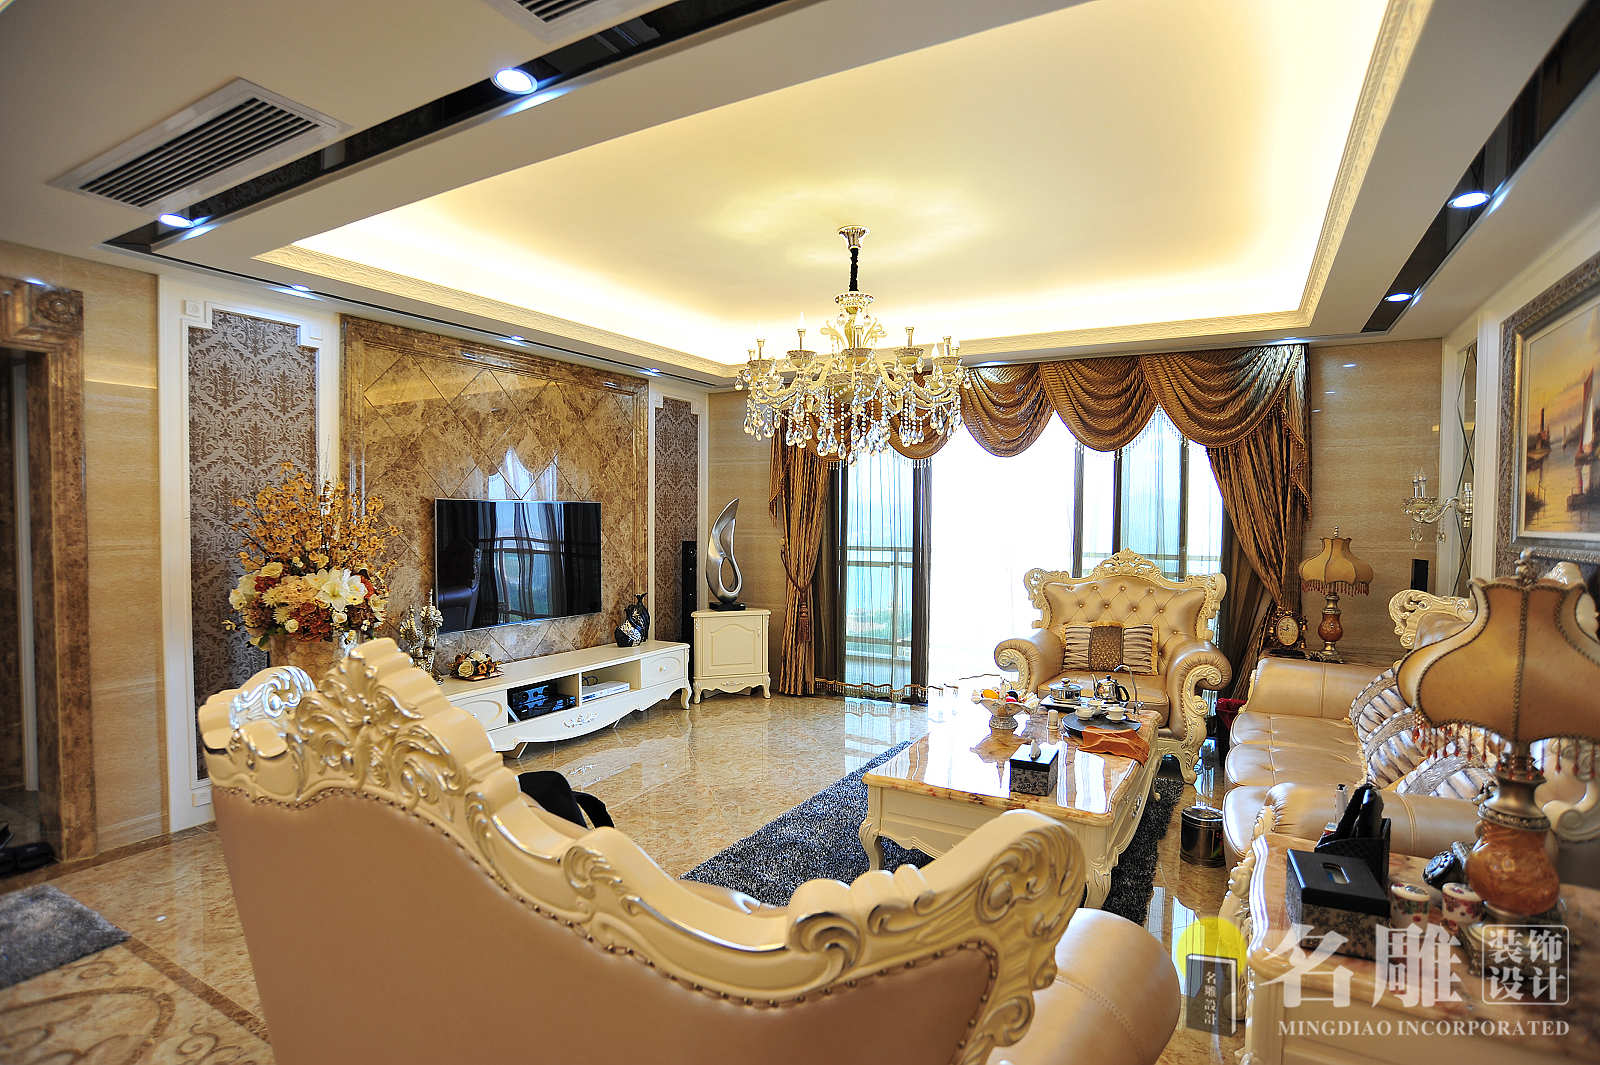 欧式 四居 豪华不俗气 舒适、温馨 品质、典雅 客厅 客厅图片来自广州名雕装饰在欧式豪华的分享